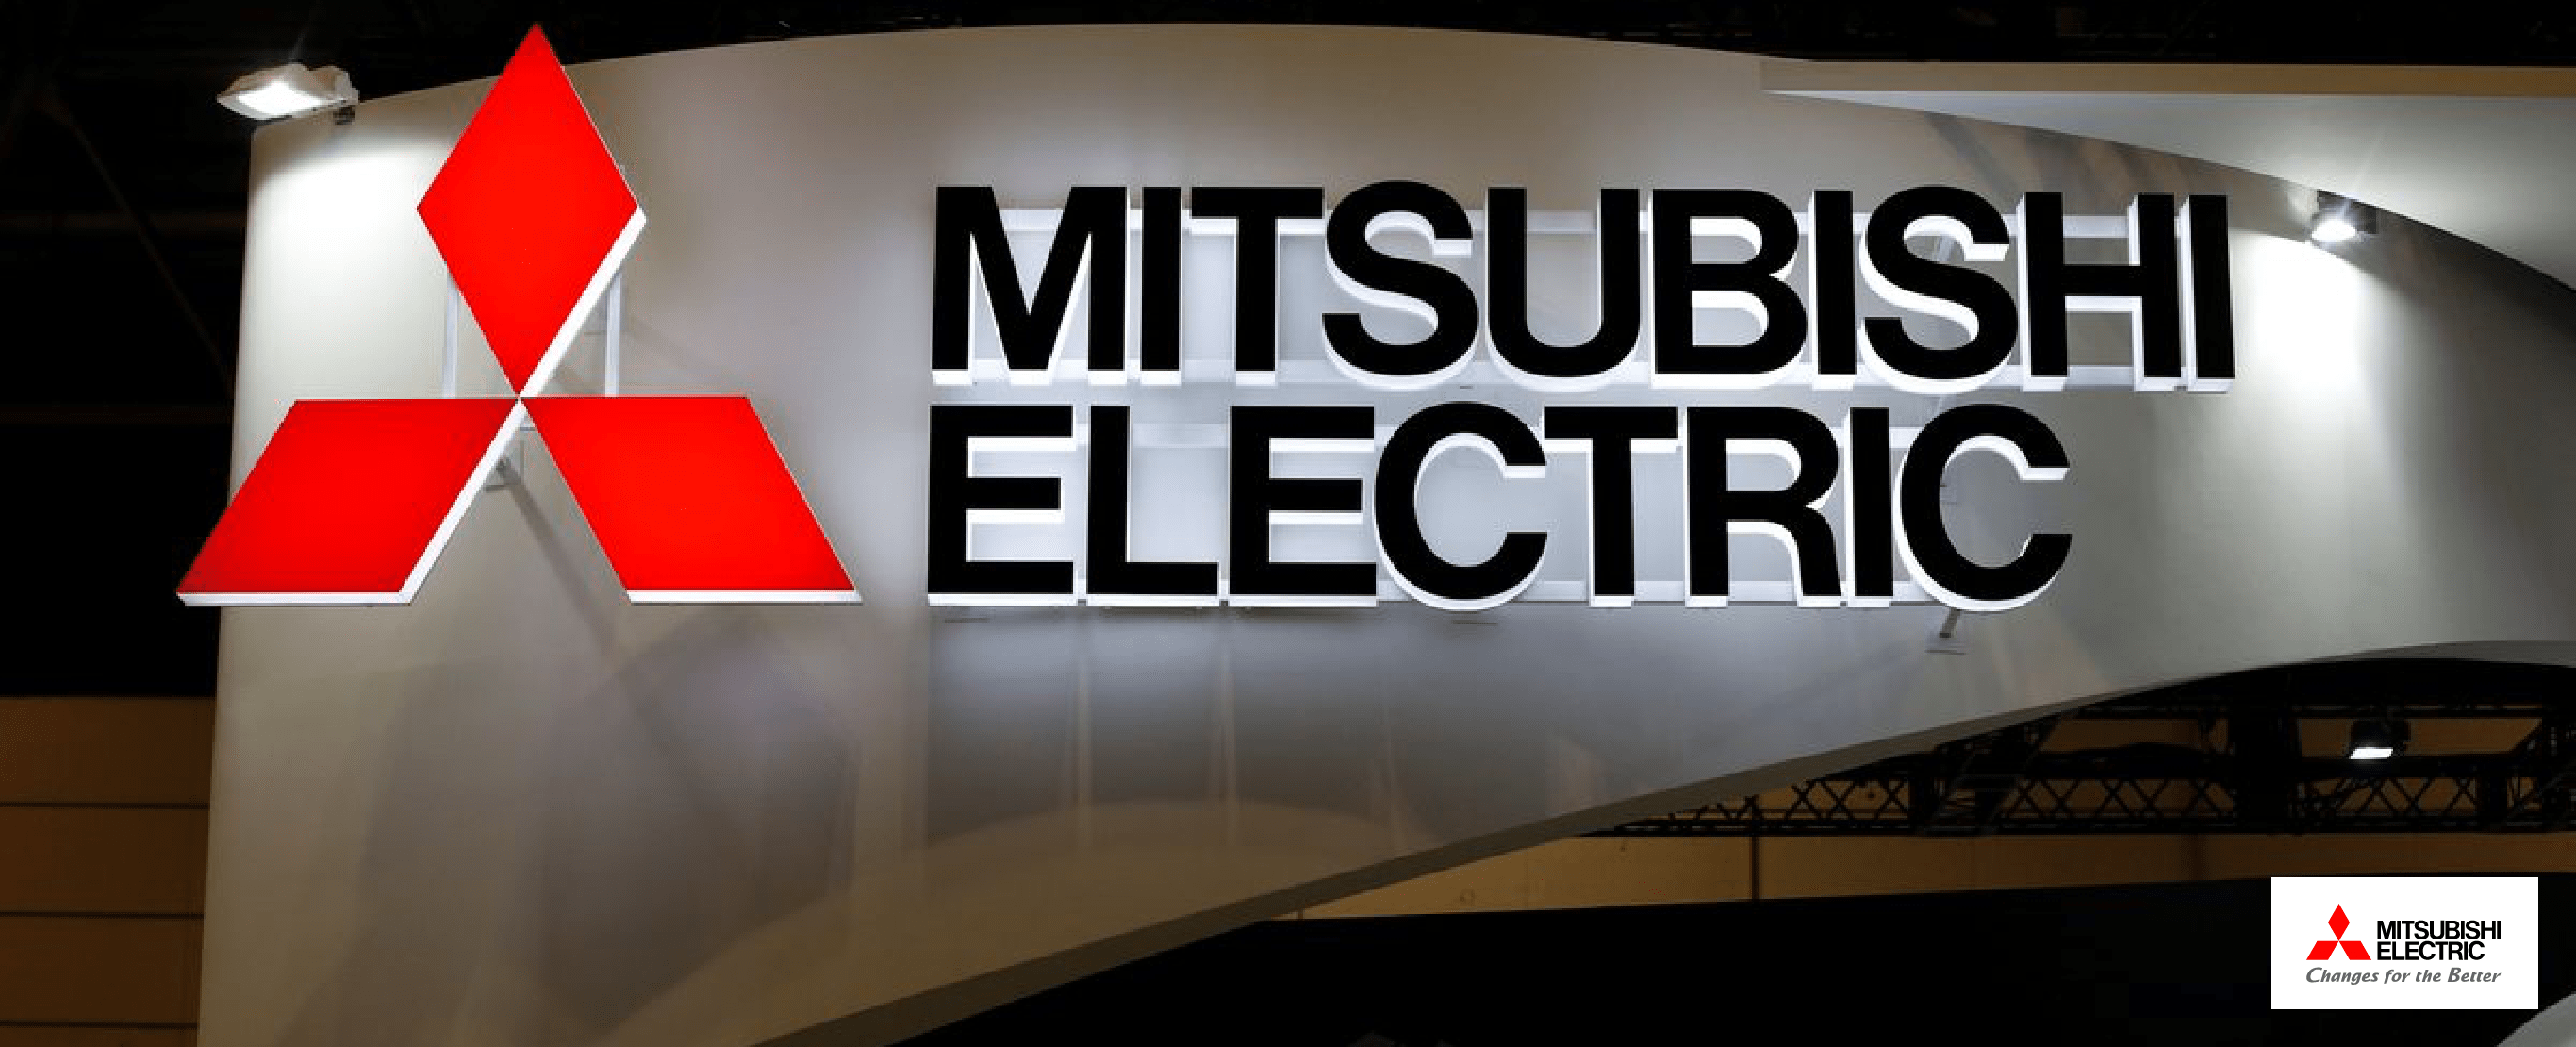 Anniversary 50 years Mitsubishi